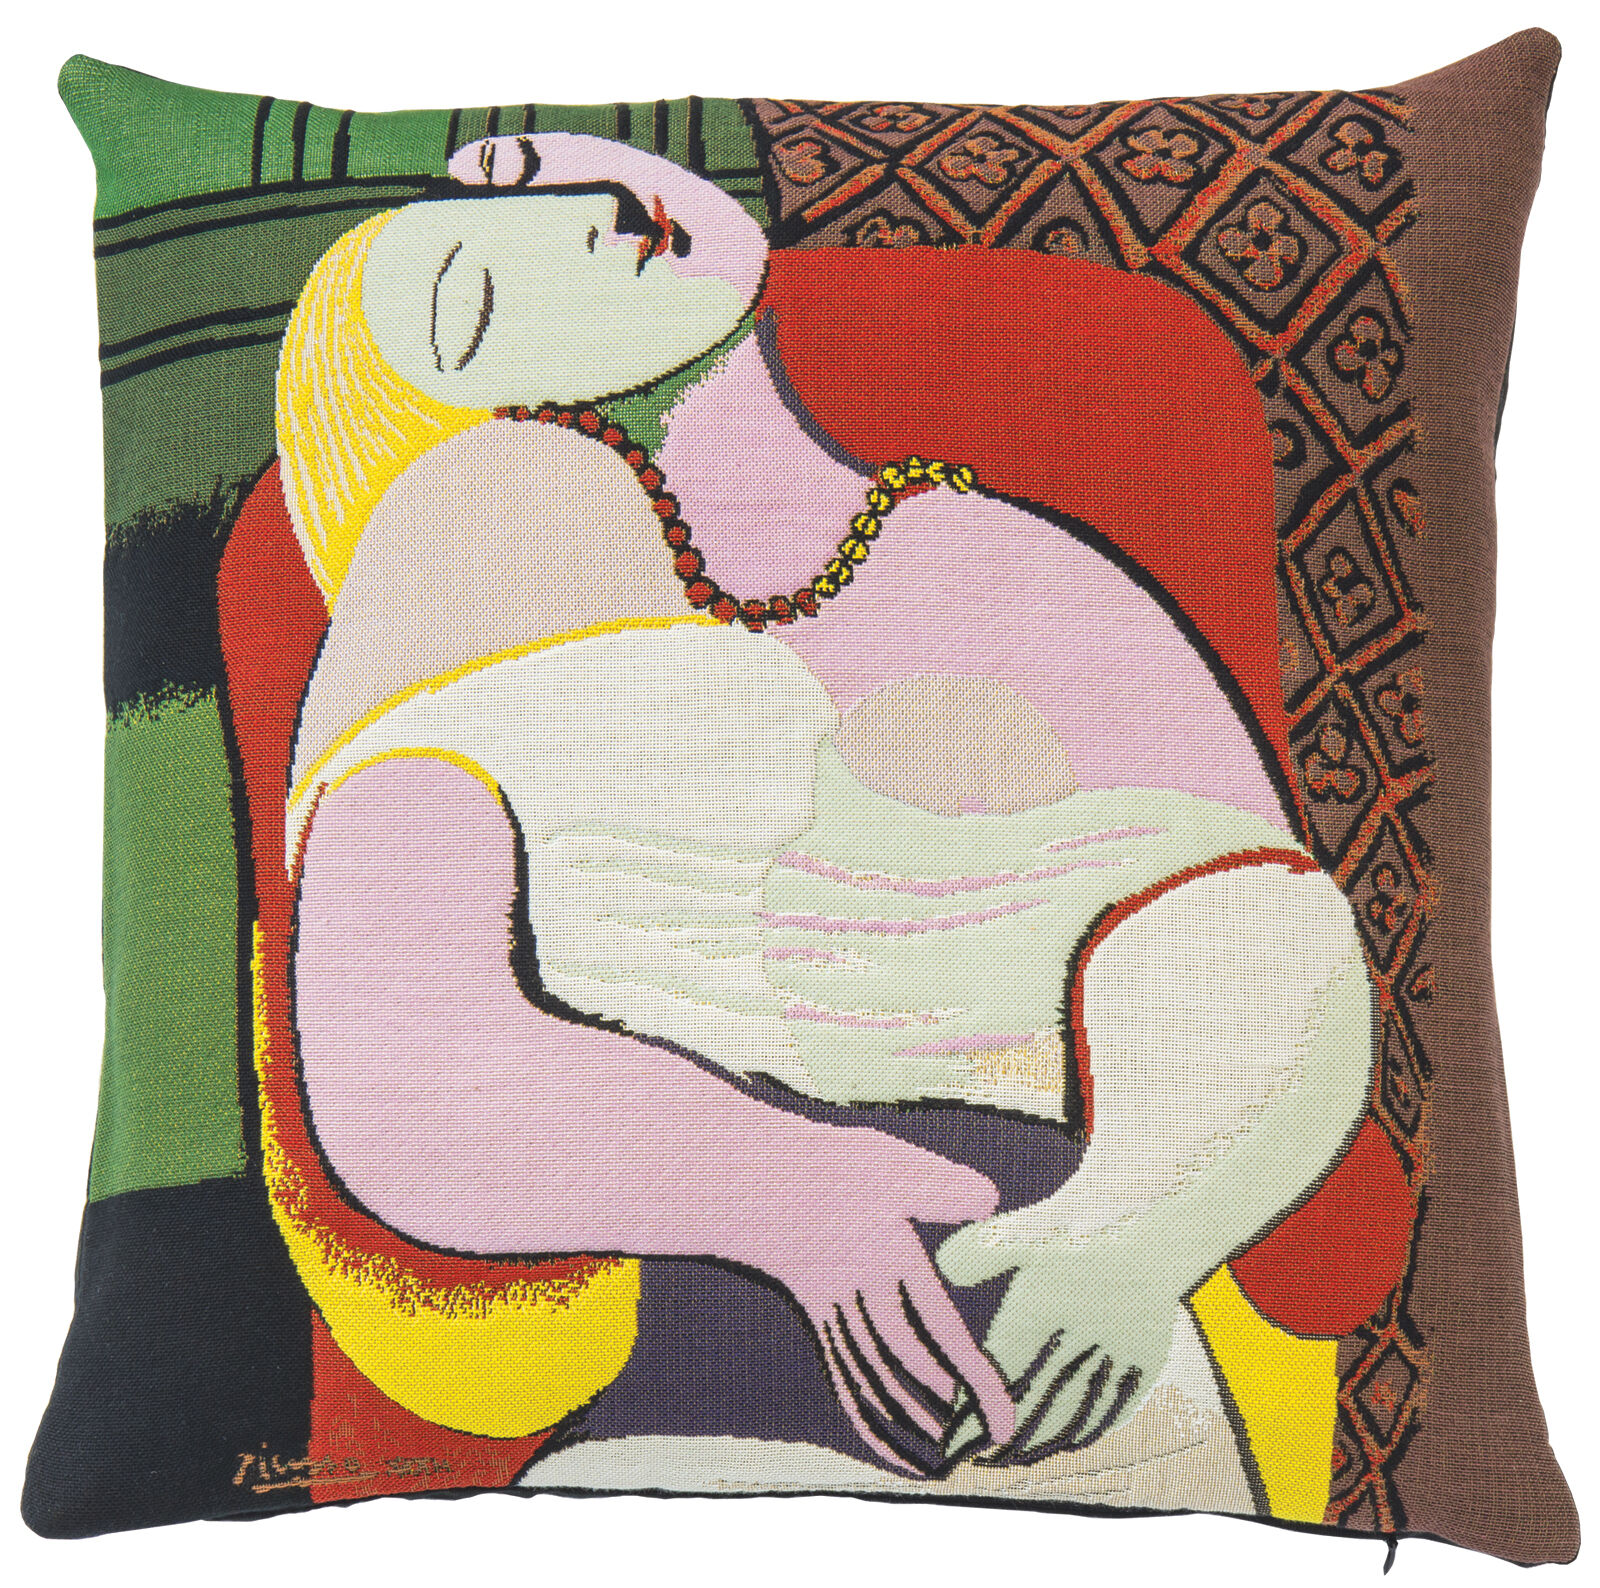 Kussenhoes "Le Rêve - De droom" (1932) von Pablo Picasso